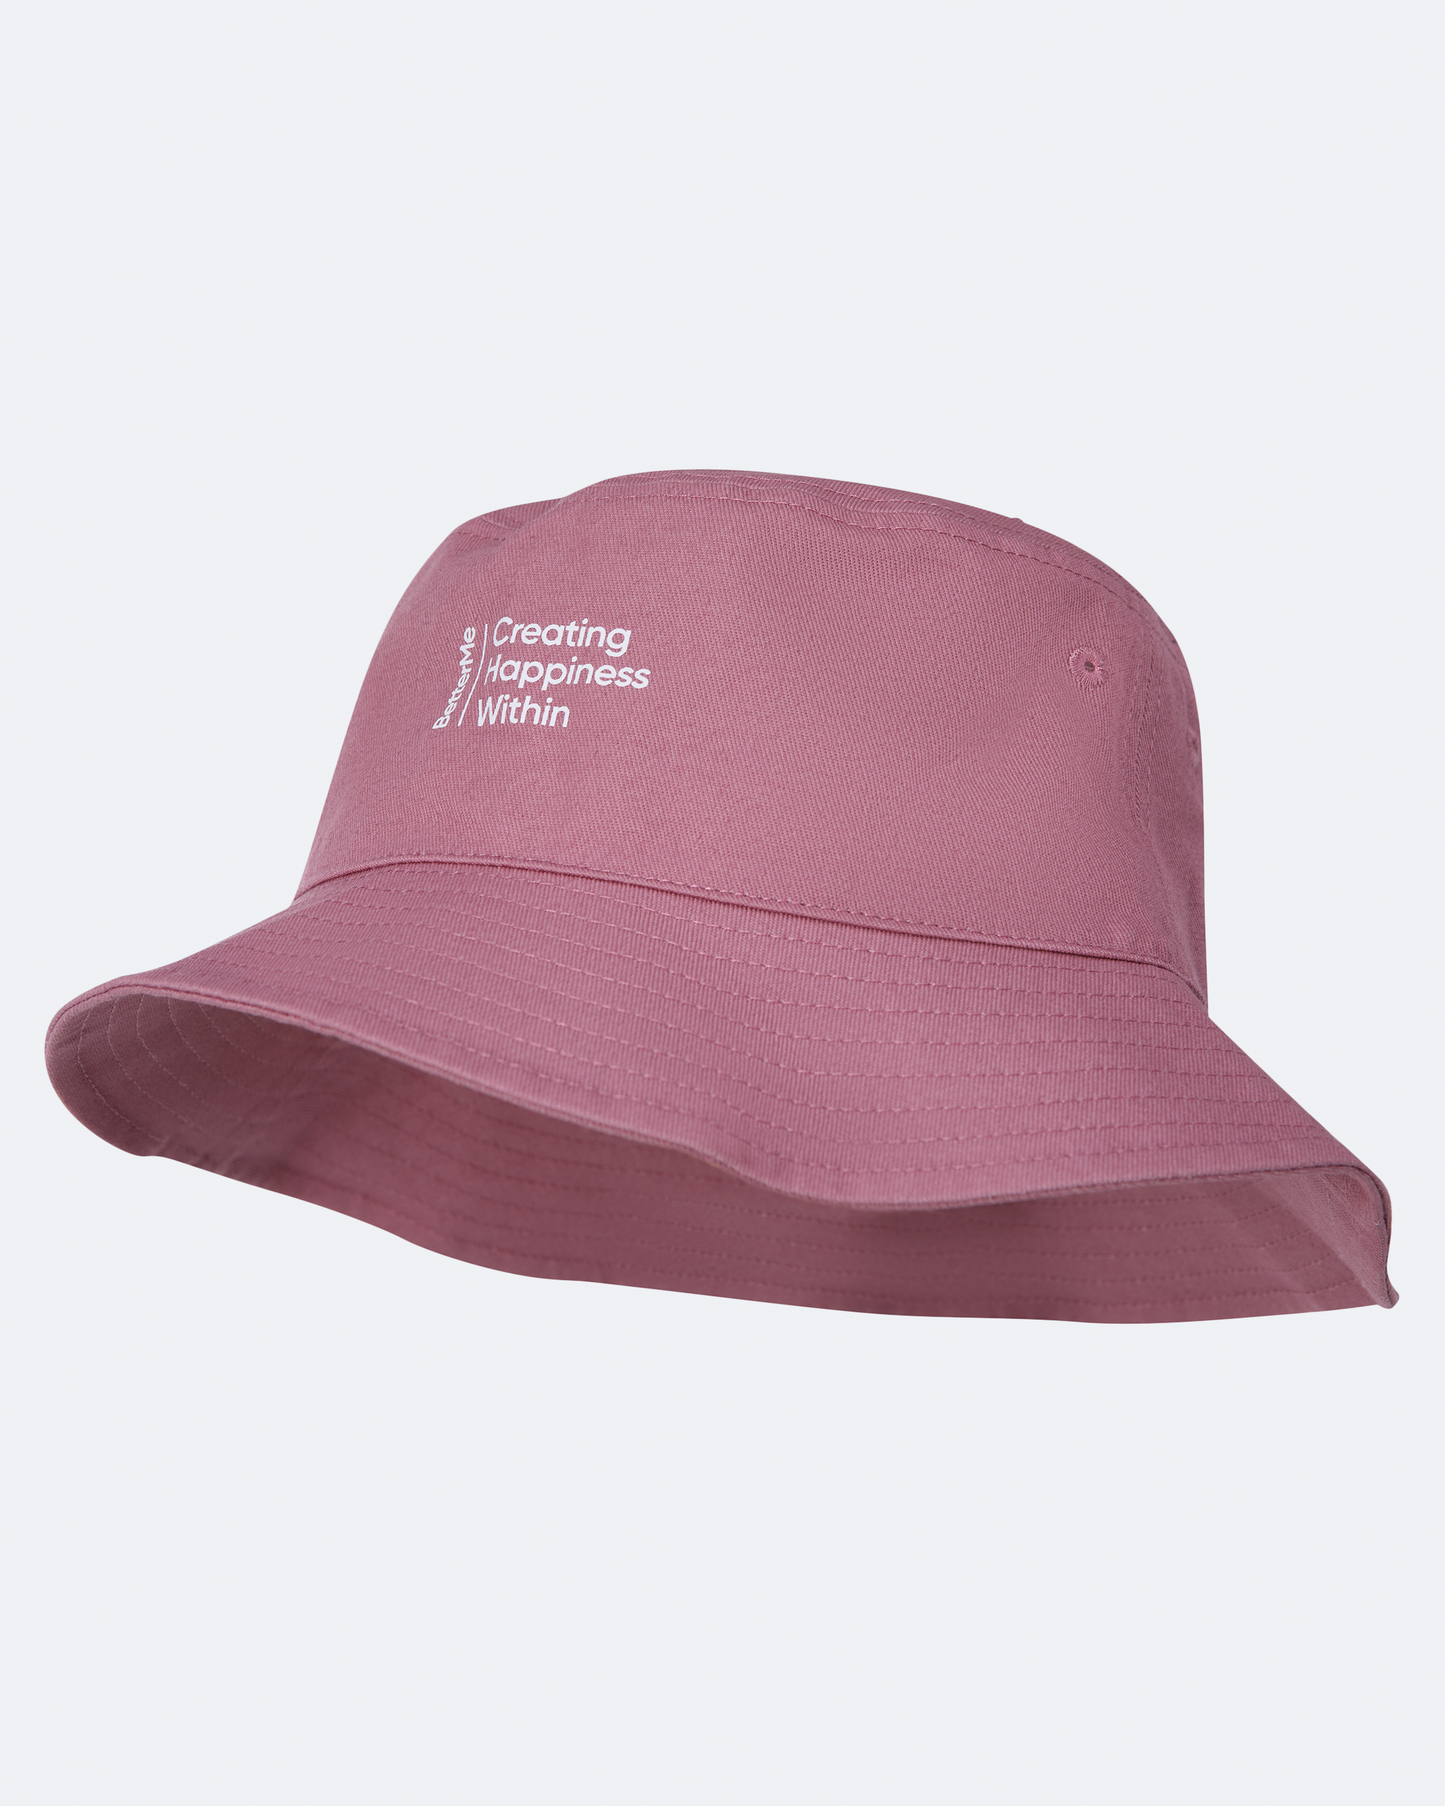 Cappello da pescatore rosa antico in stile casual